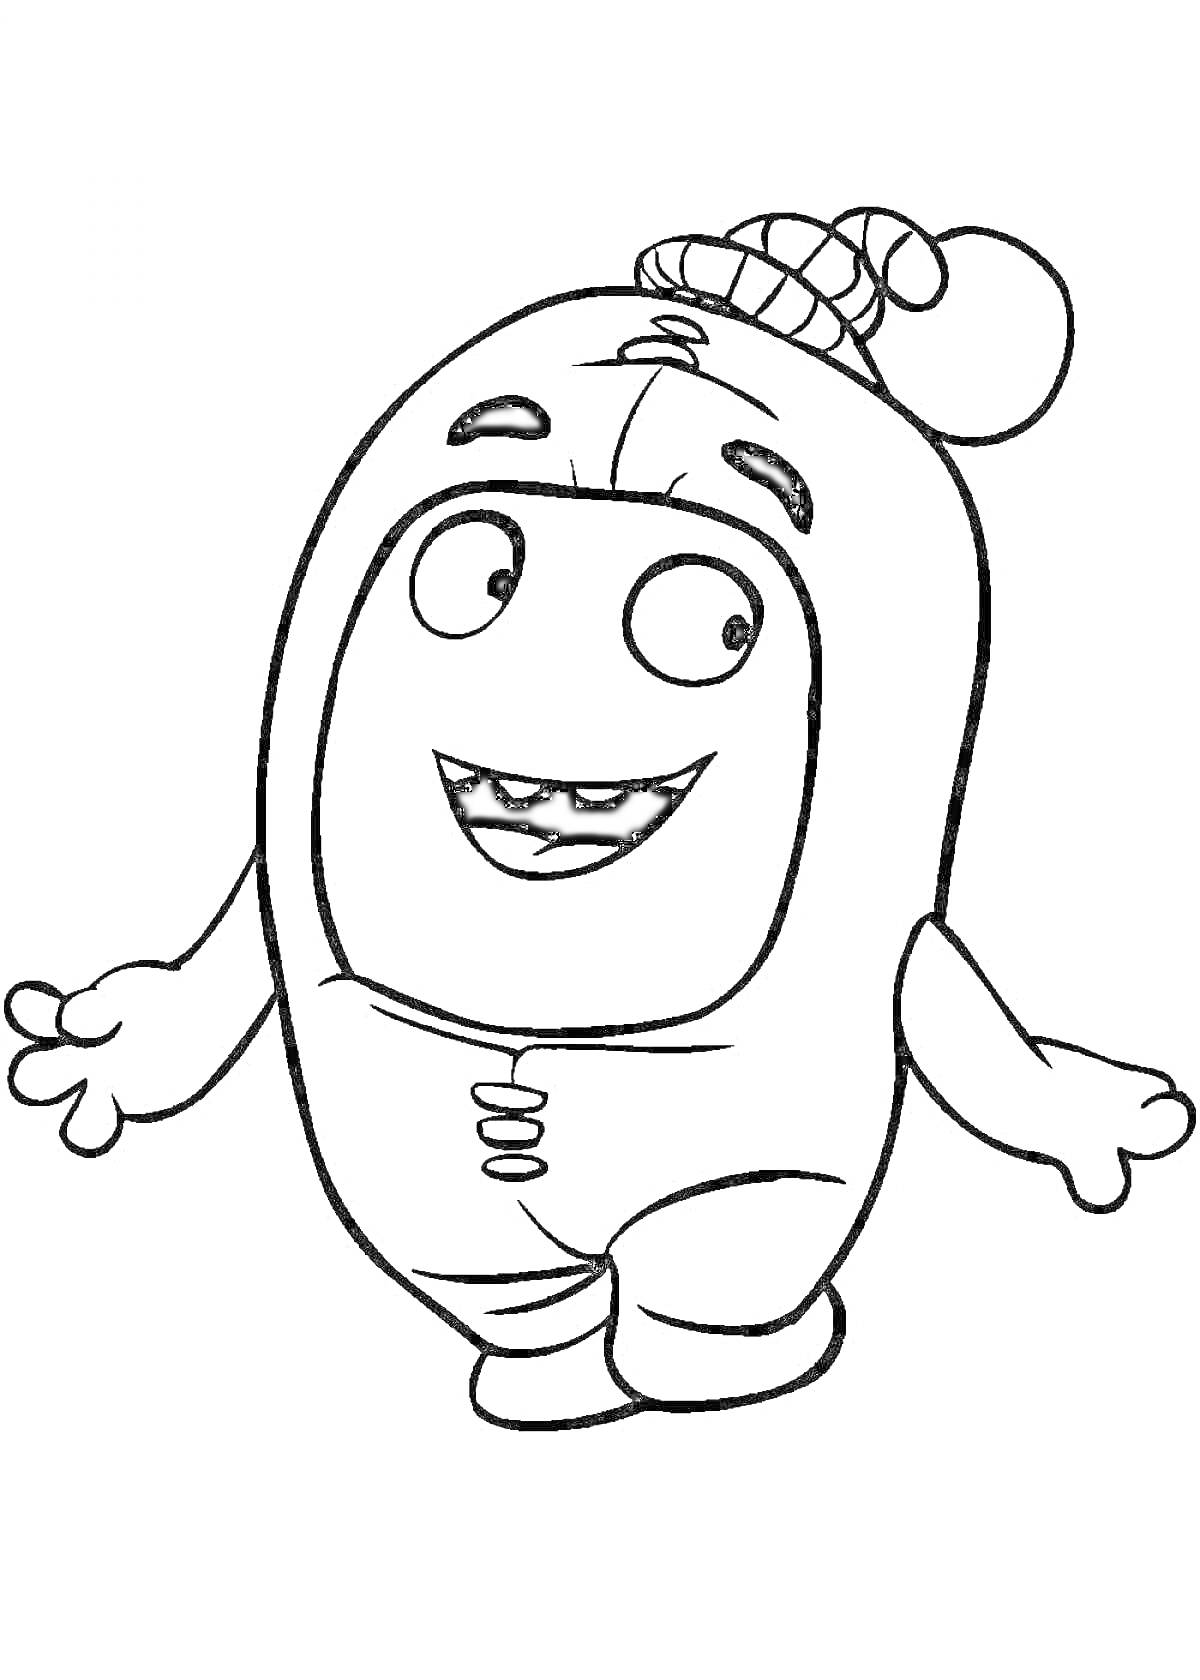 Раскраска Oddbods персонаж в шапке с помпоном